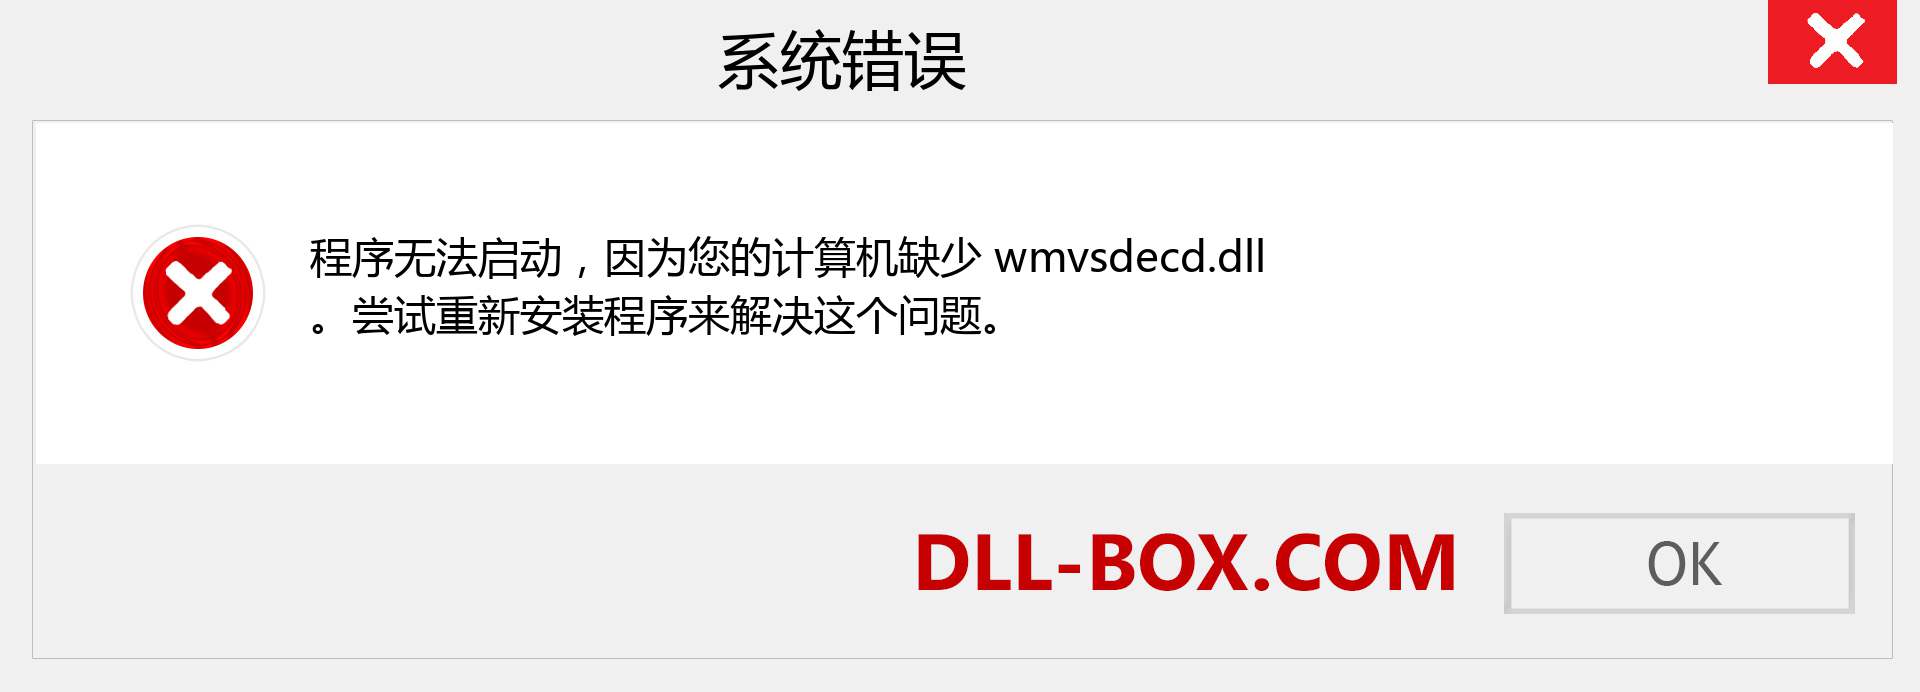 wmvsdecd.dll 文件丢失？。 适用于 Windows 7、8、10 的下载 - 修复 Windows、照片、图像上的 wmvsdecd dll 丢失错误